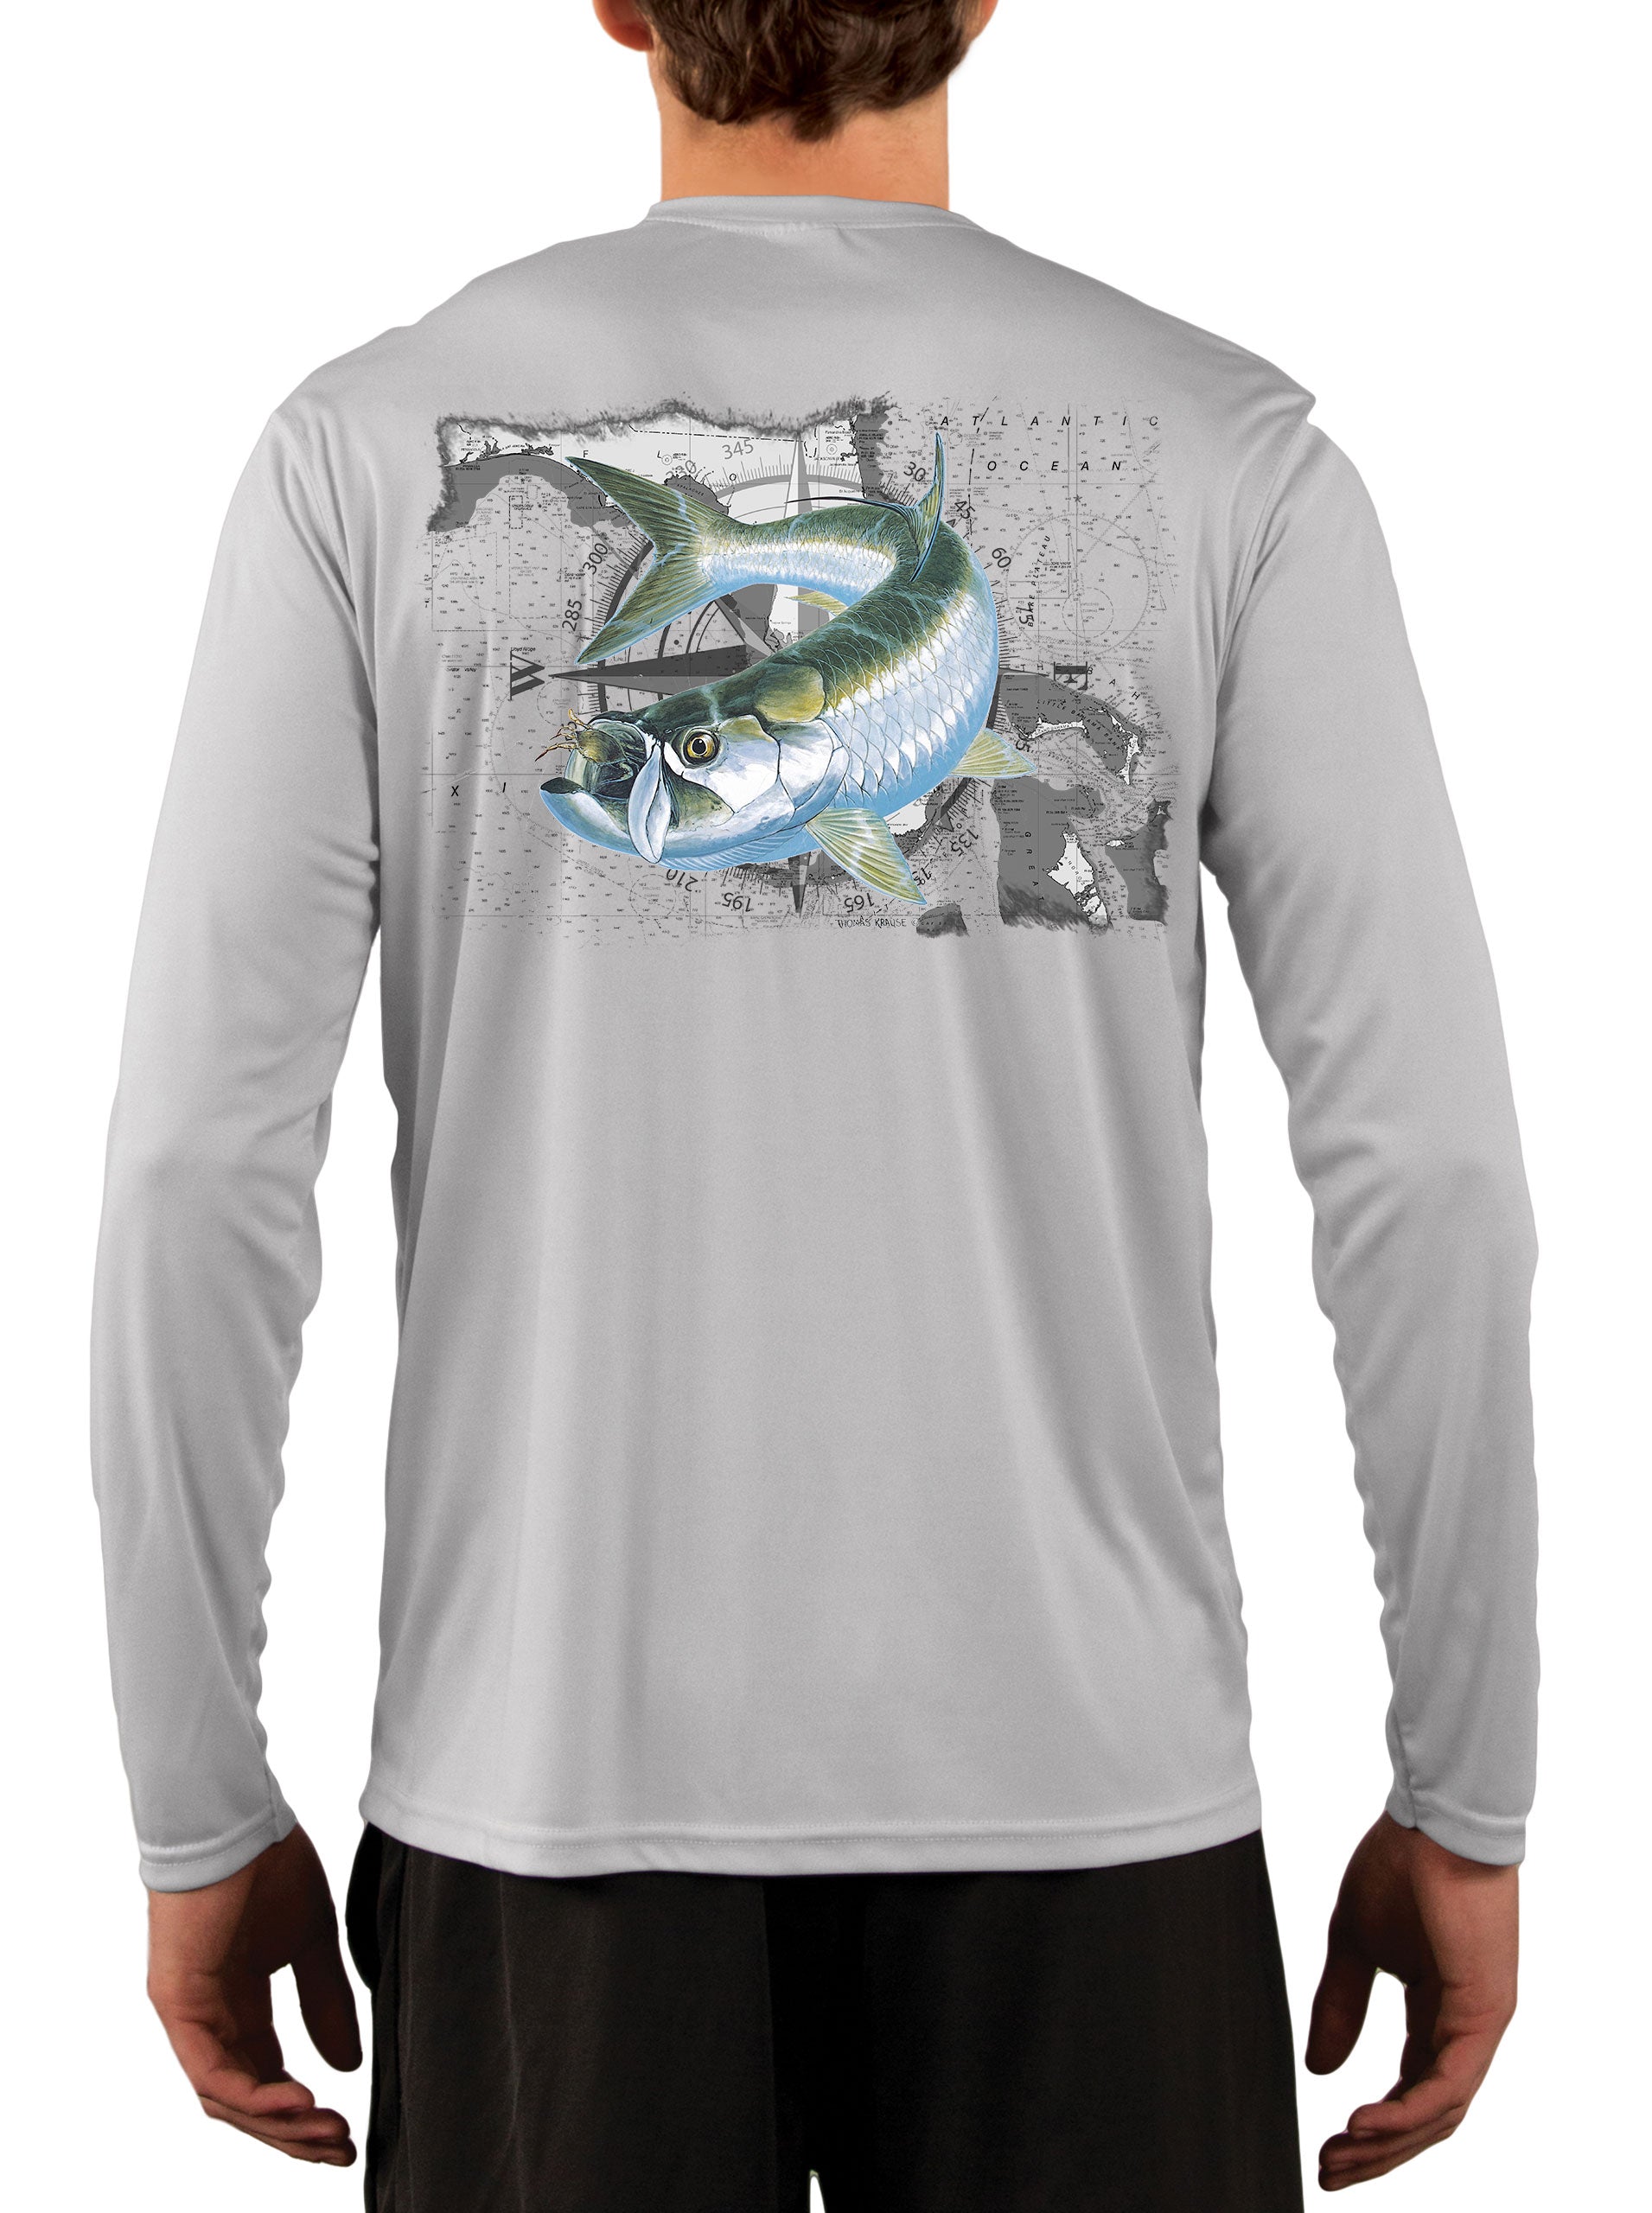 Tarpon Crab Compass over Florida Map Long Sleeve Men's Fishing Shirt